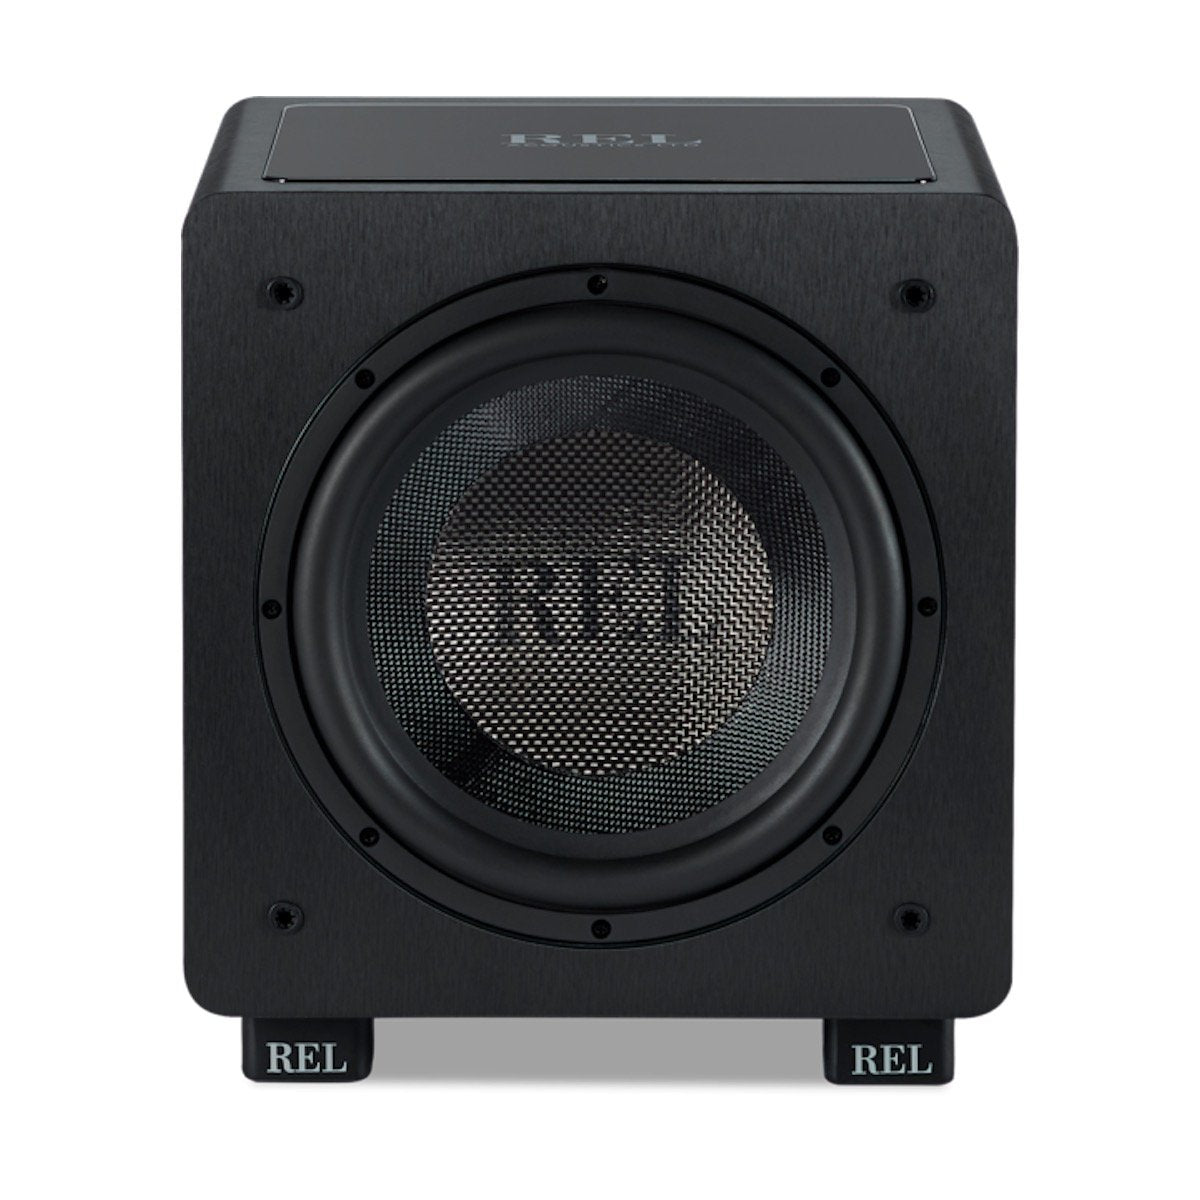 REL Acoustics HT/1003 - Active Subwoofer - AVStore